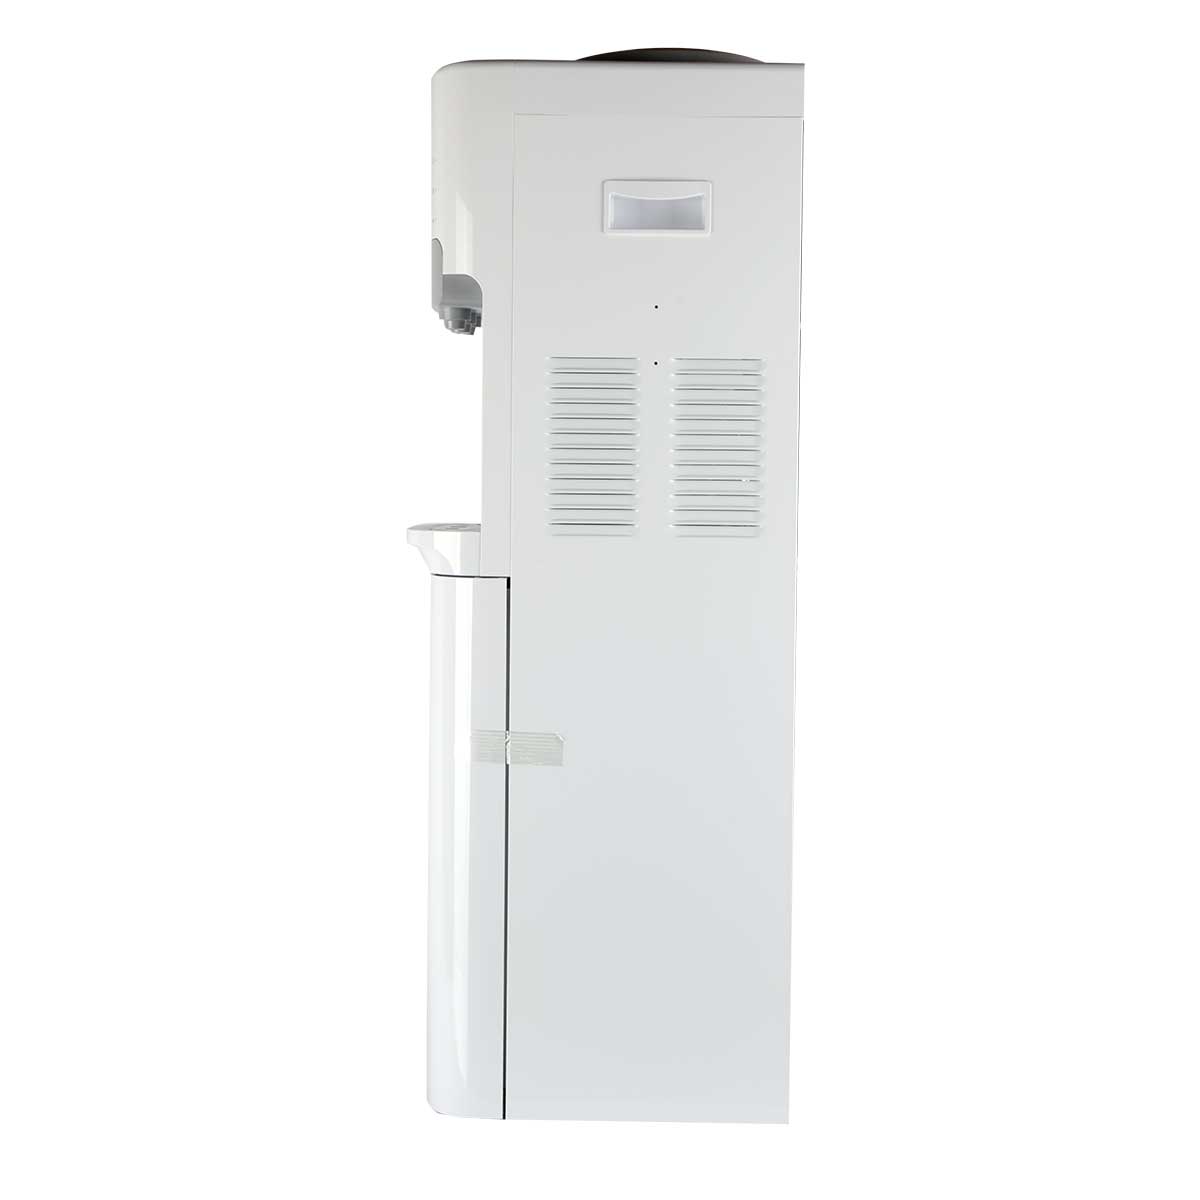 Cây nước nóng lạnh Electrolux EQALF01TXWV - Hàng chính hãng